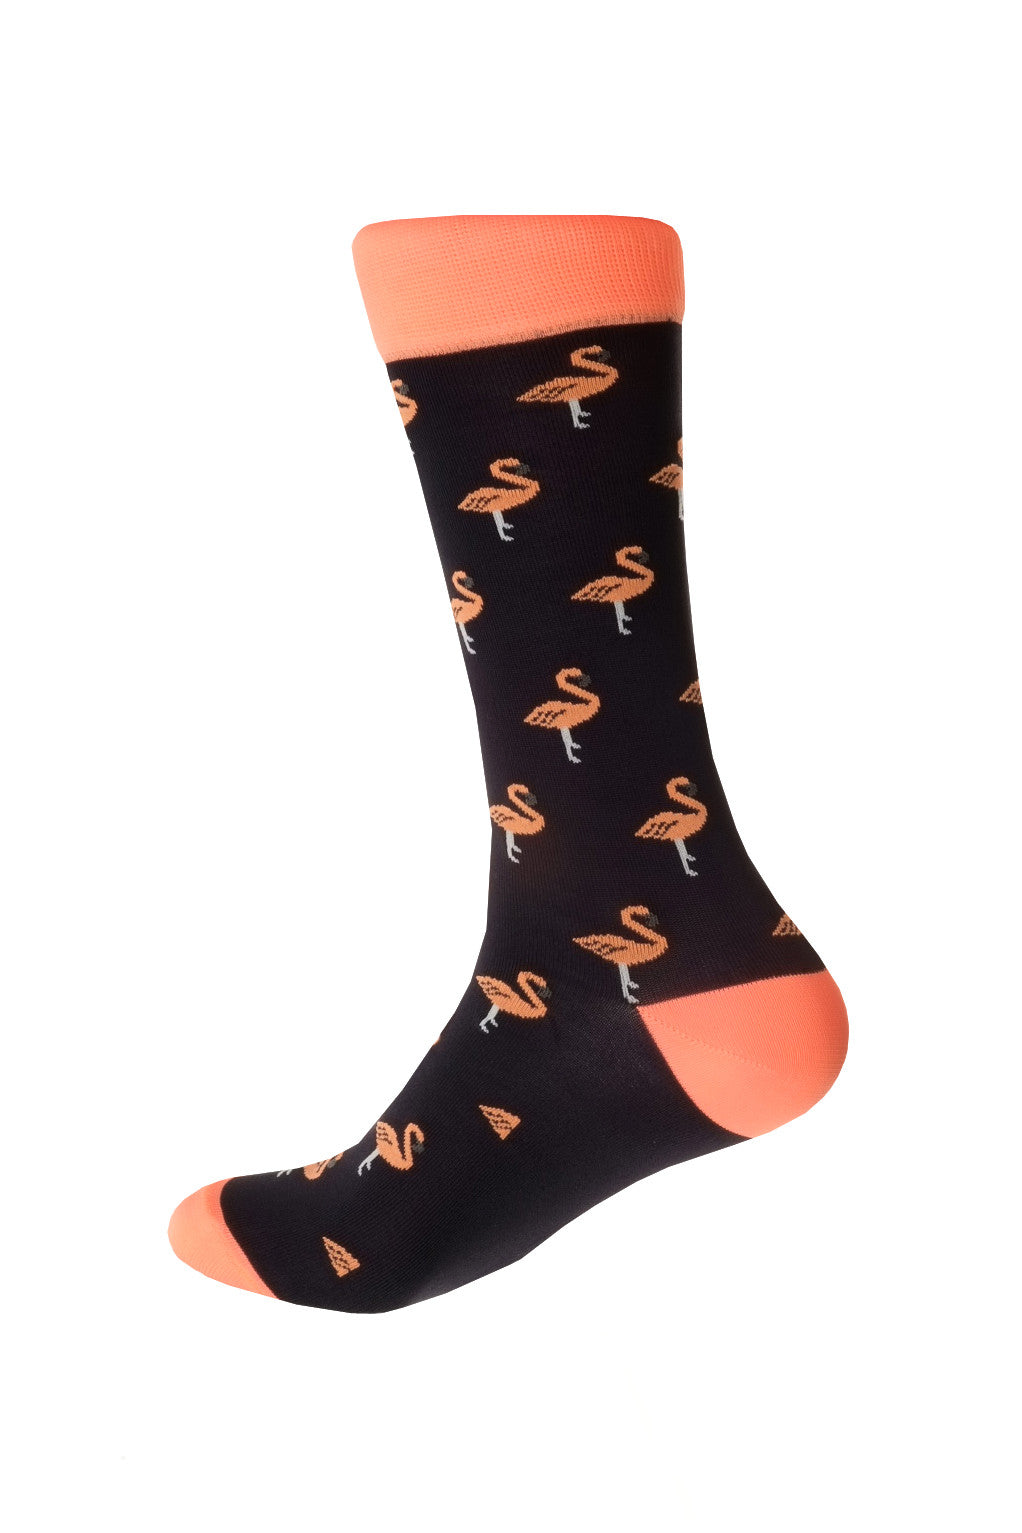 Giraffe Cool | Black And Pink Flamingos Microfiber Socks Foot Back